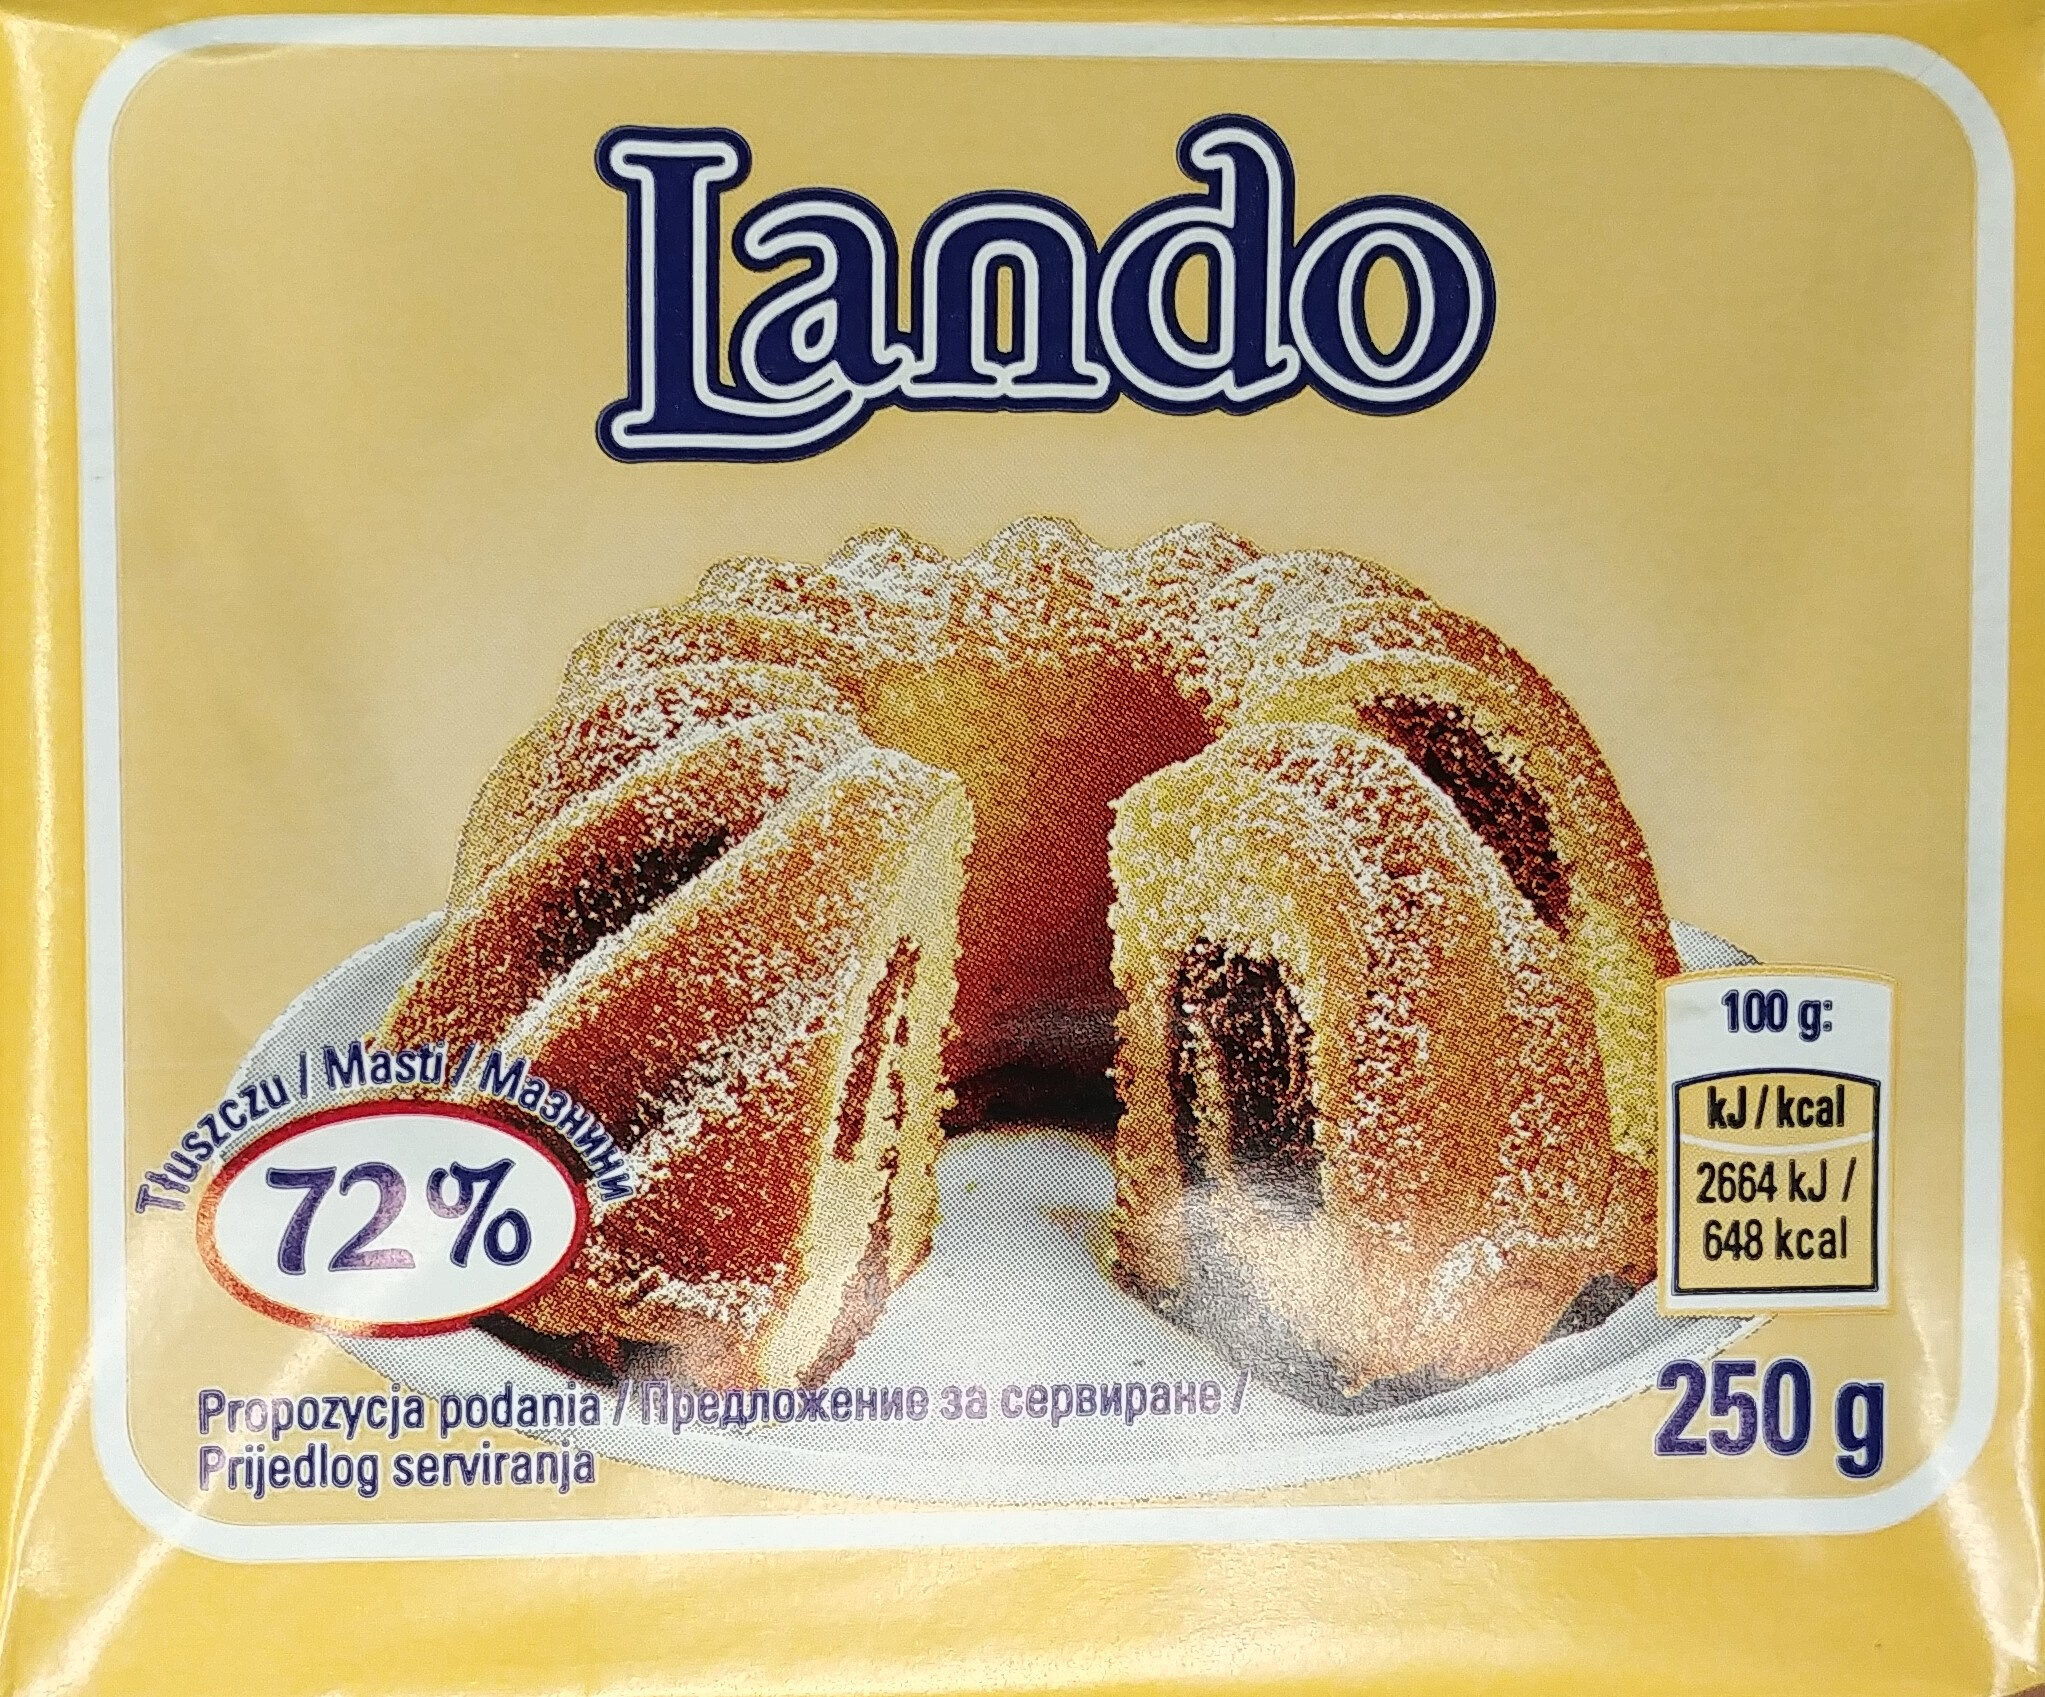 Lando - Produkt